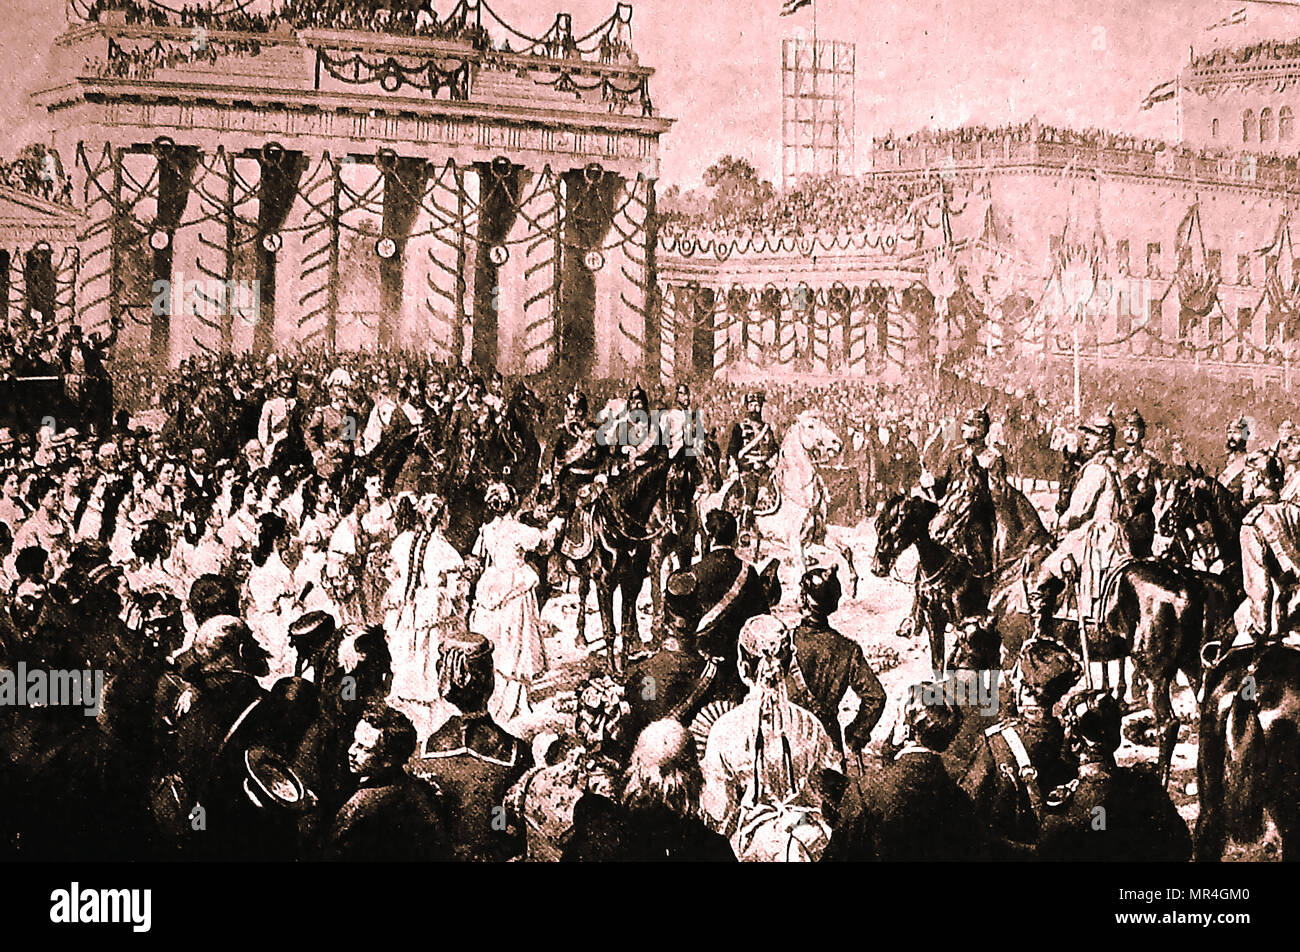 Alemania conquista del Emperador Guillermo (Wilhelm) I, triunfante entrando en Berlín, junio de 1871 - También conocido como William Frederick Louis de Hohenzollern, Wilhelm Friedrich Ludwig von Hohenzollern y Rey de Prusia. Foto de stock